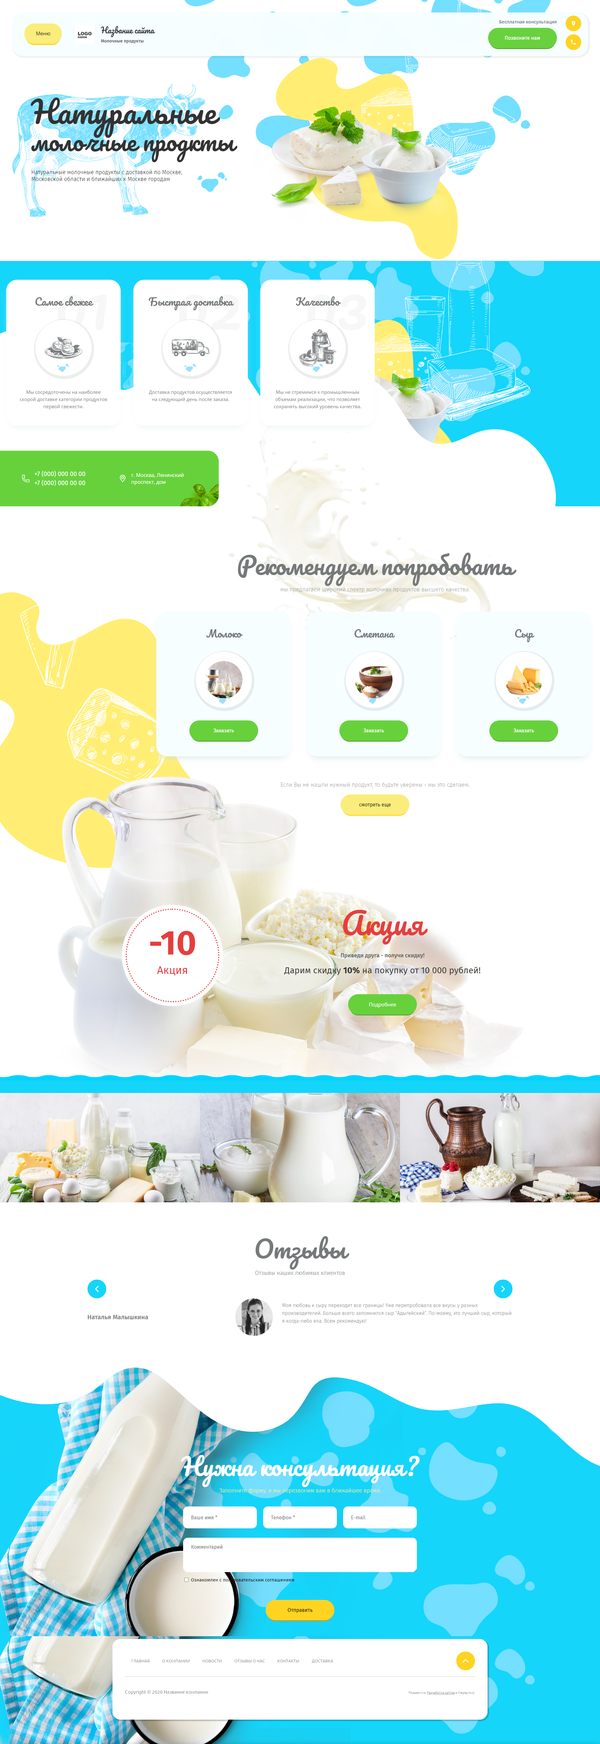 Готовый Сайт-Бизнес № 2777053 - Молочная продукция (Десктопная версия)